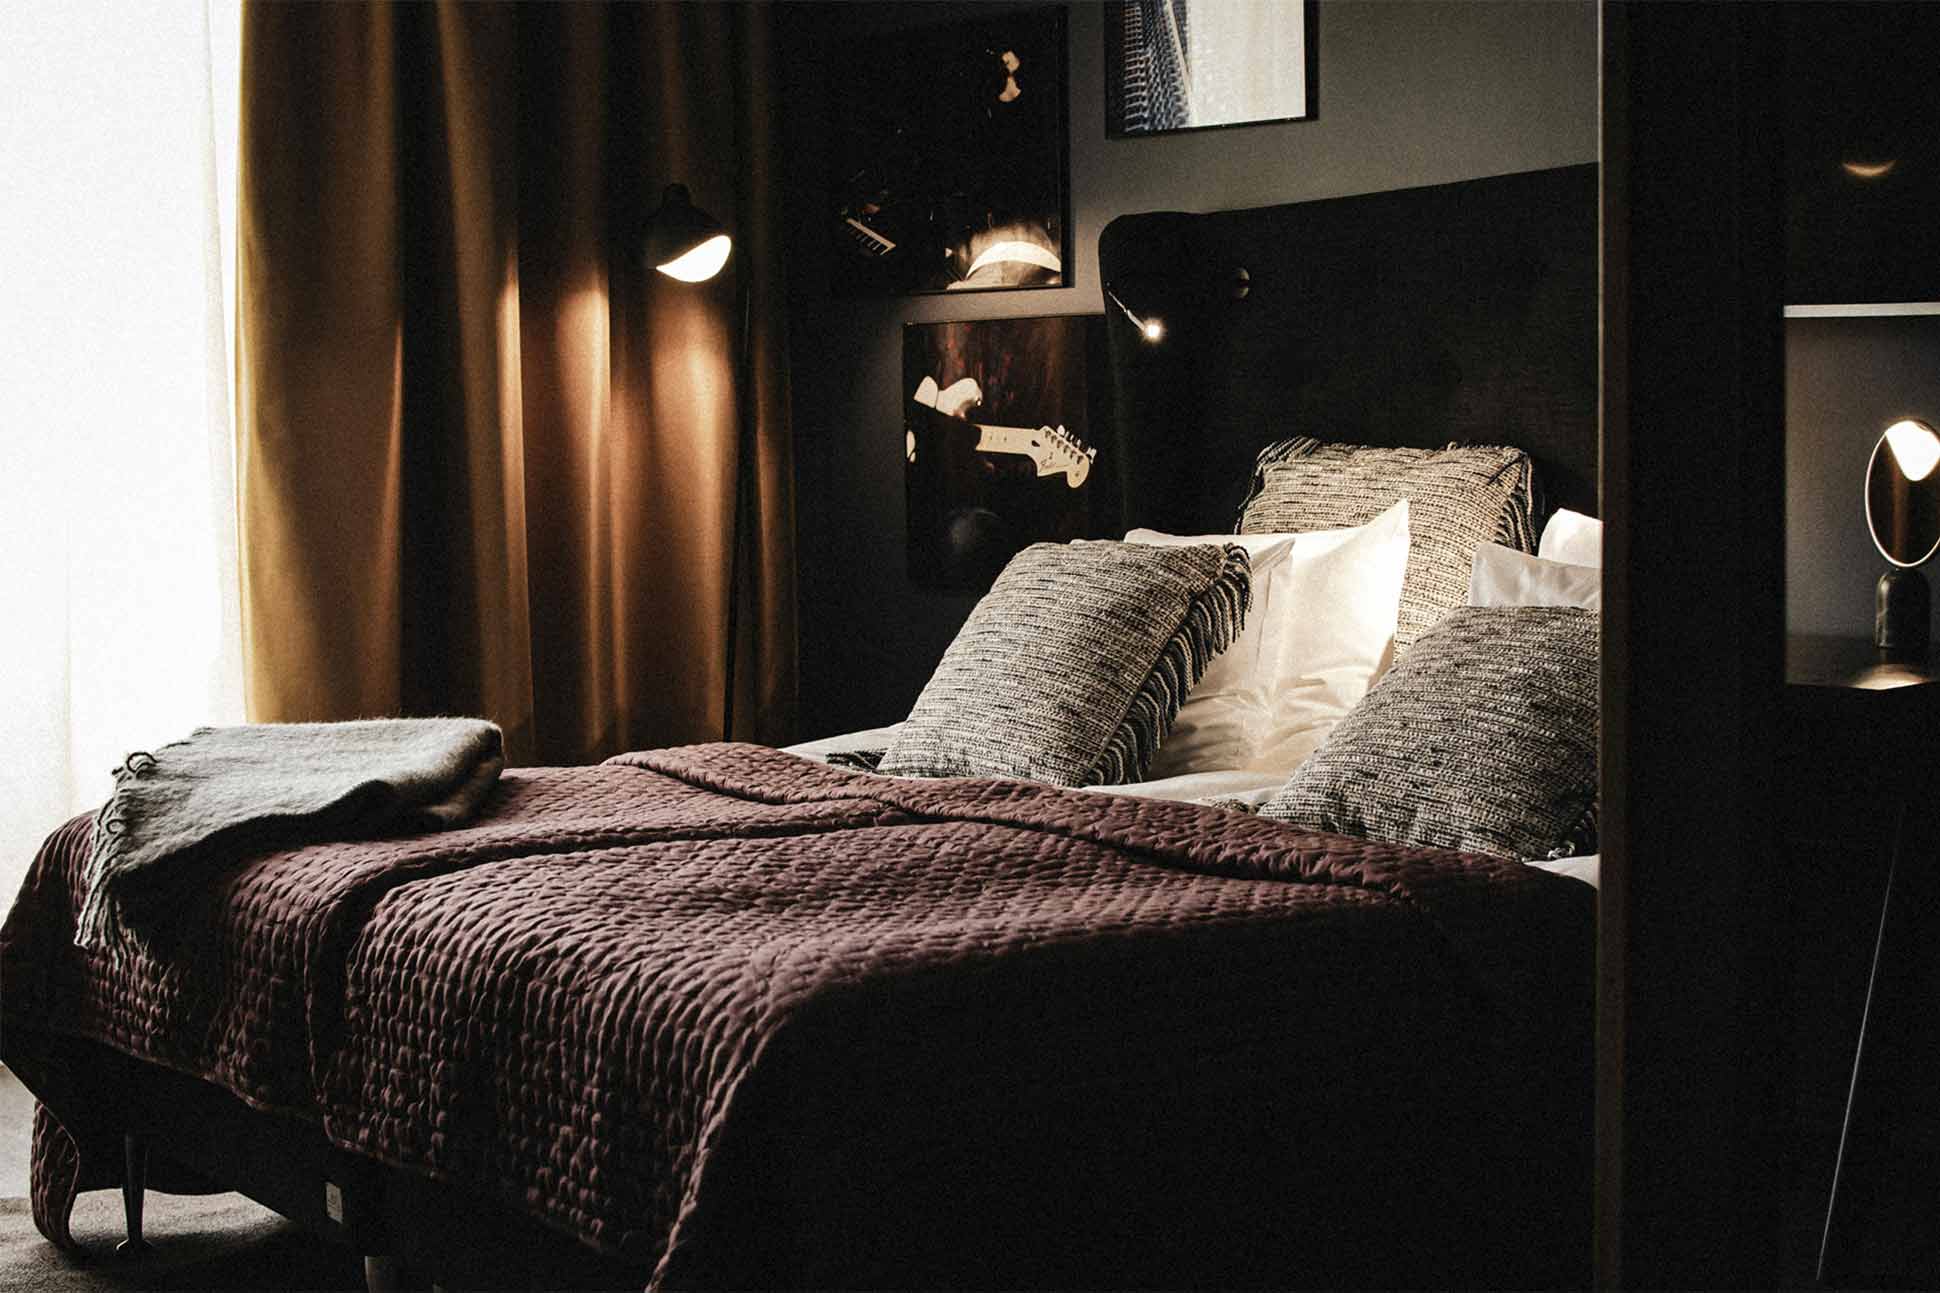 Bedroom at Backstage Hotel Stockholm, Sweden